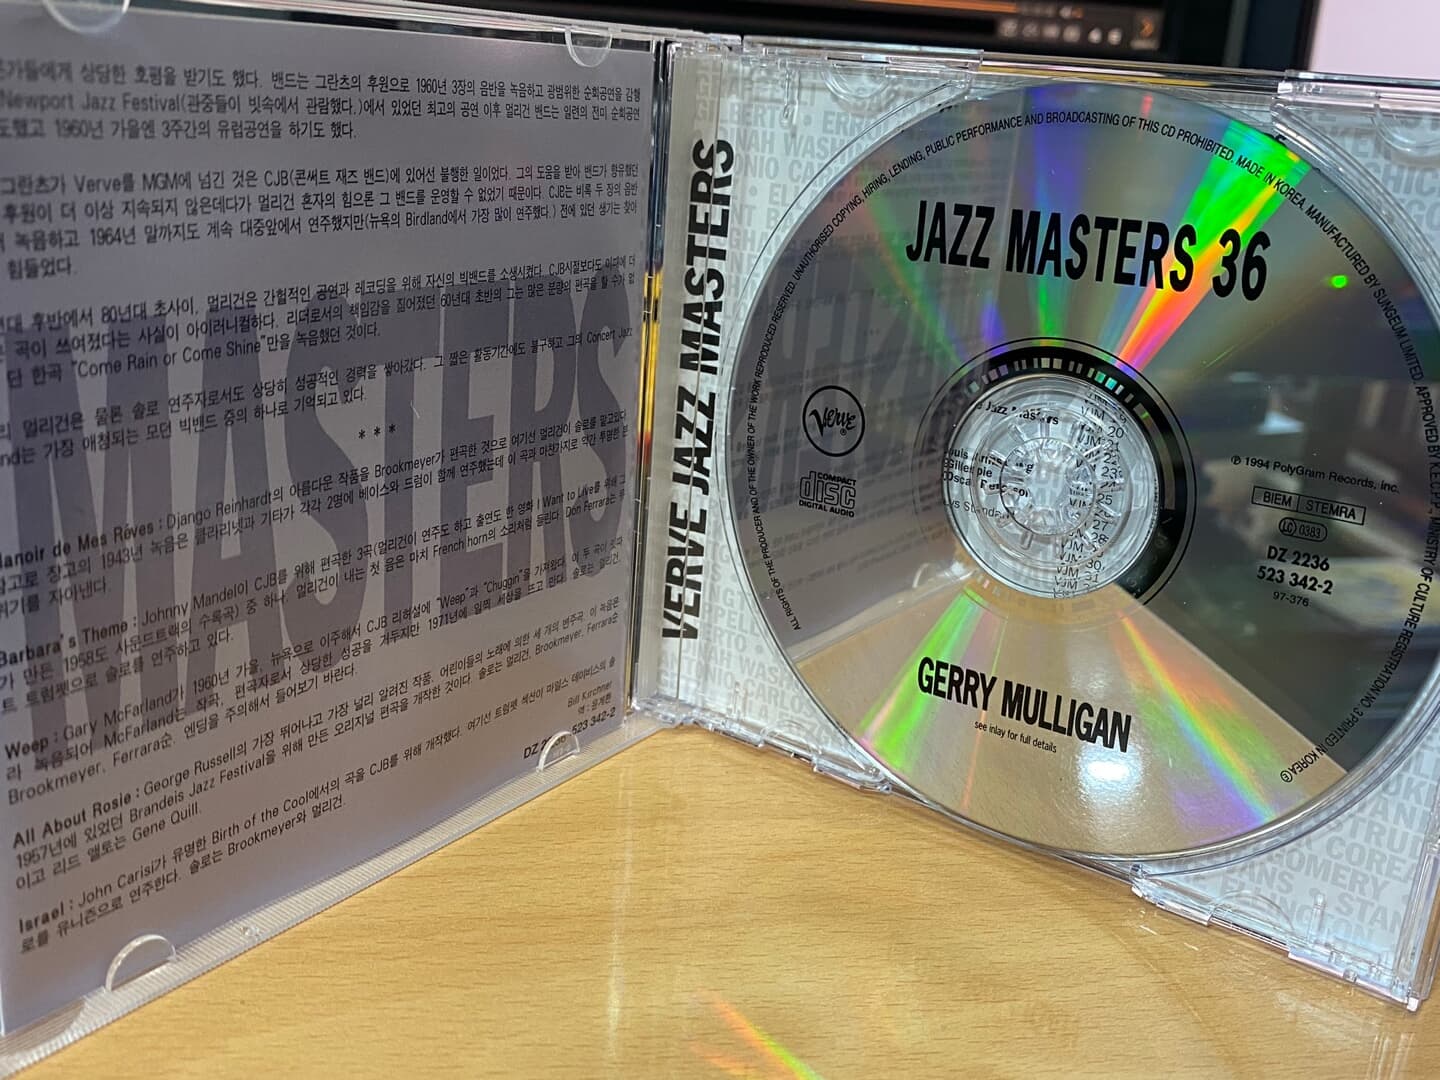 게리 멀리건 - Gerry Mulligan - Jazz Masters 36